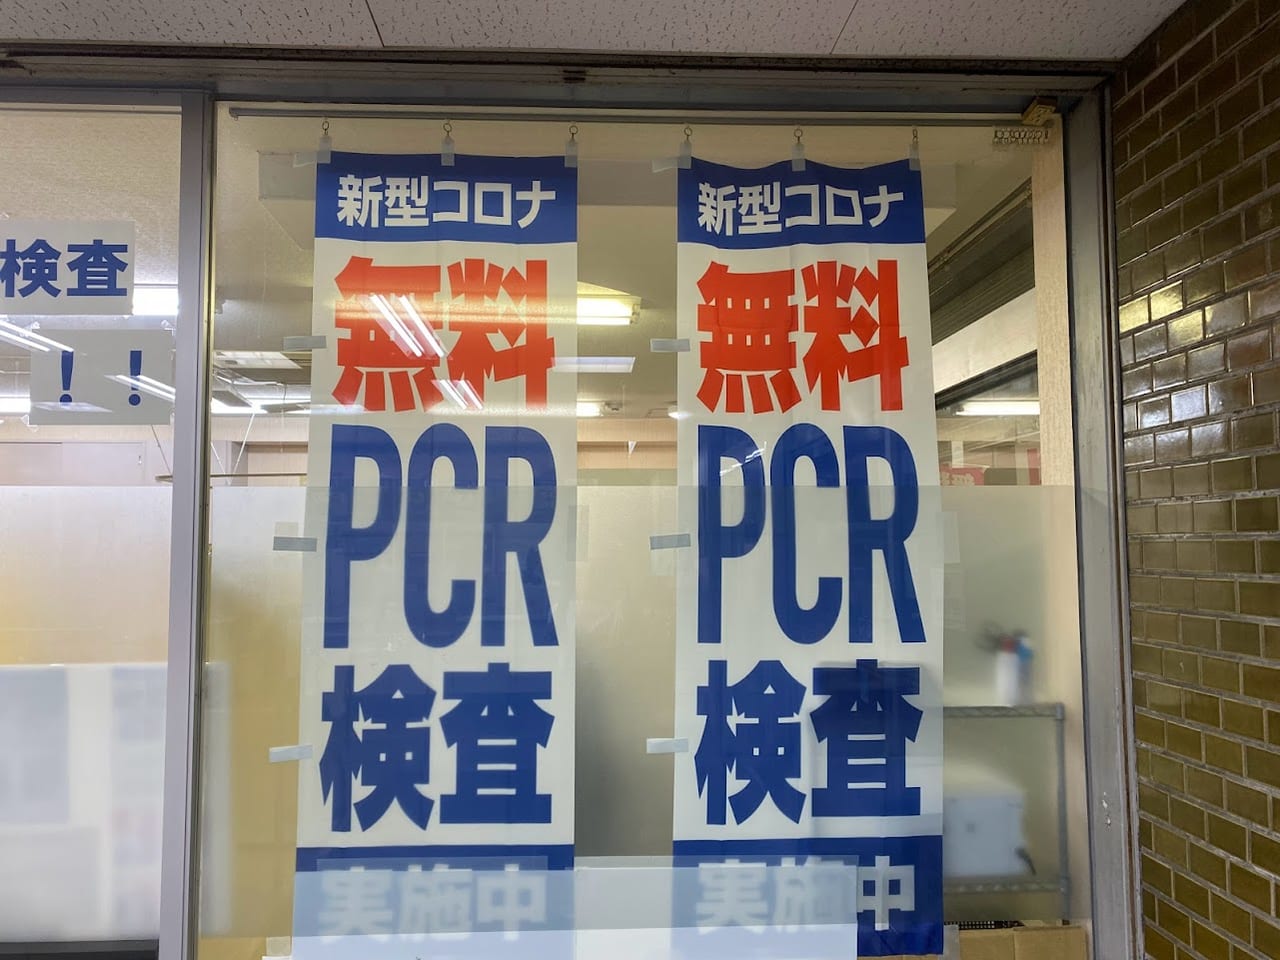 無料PCR検査センターJR平野駅前外観⑥